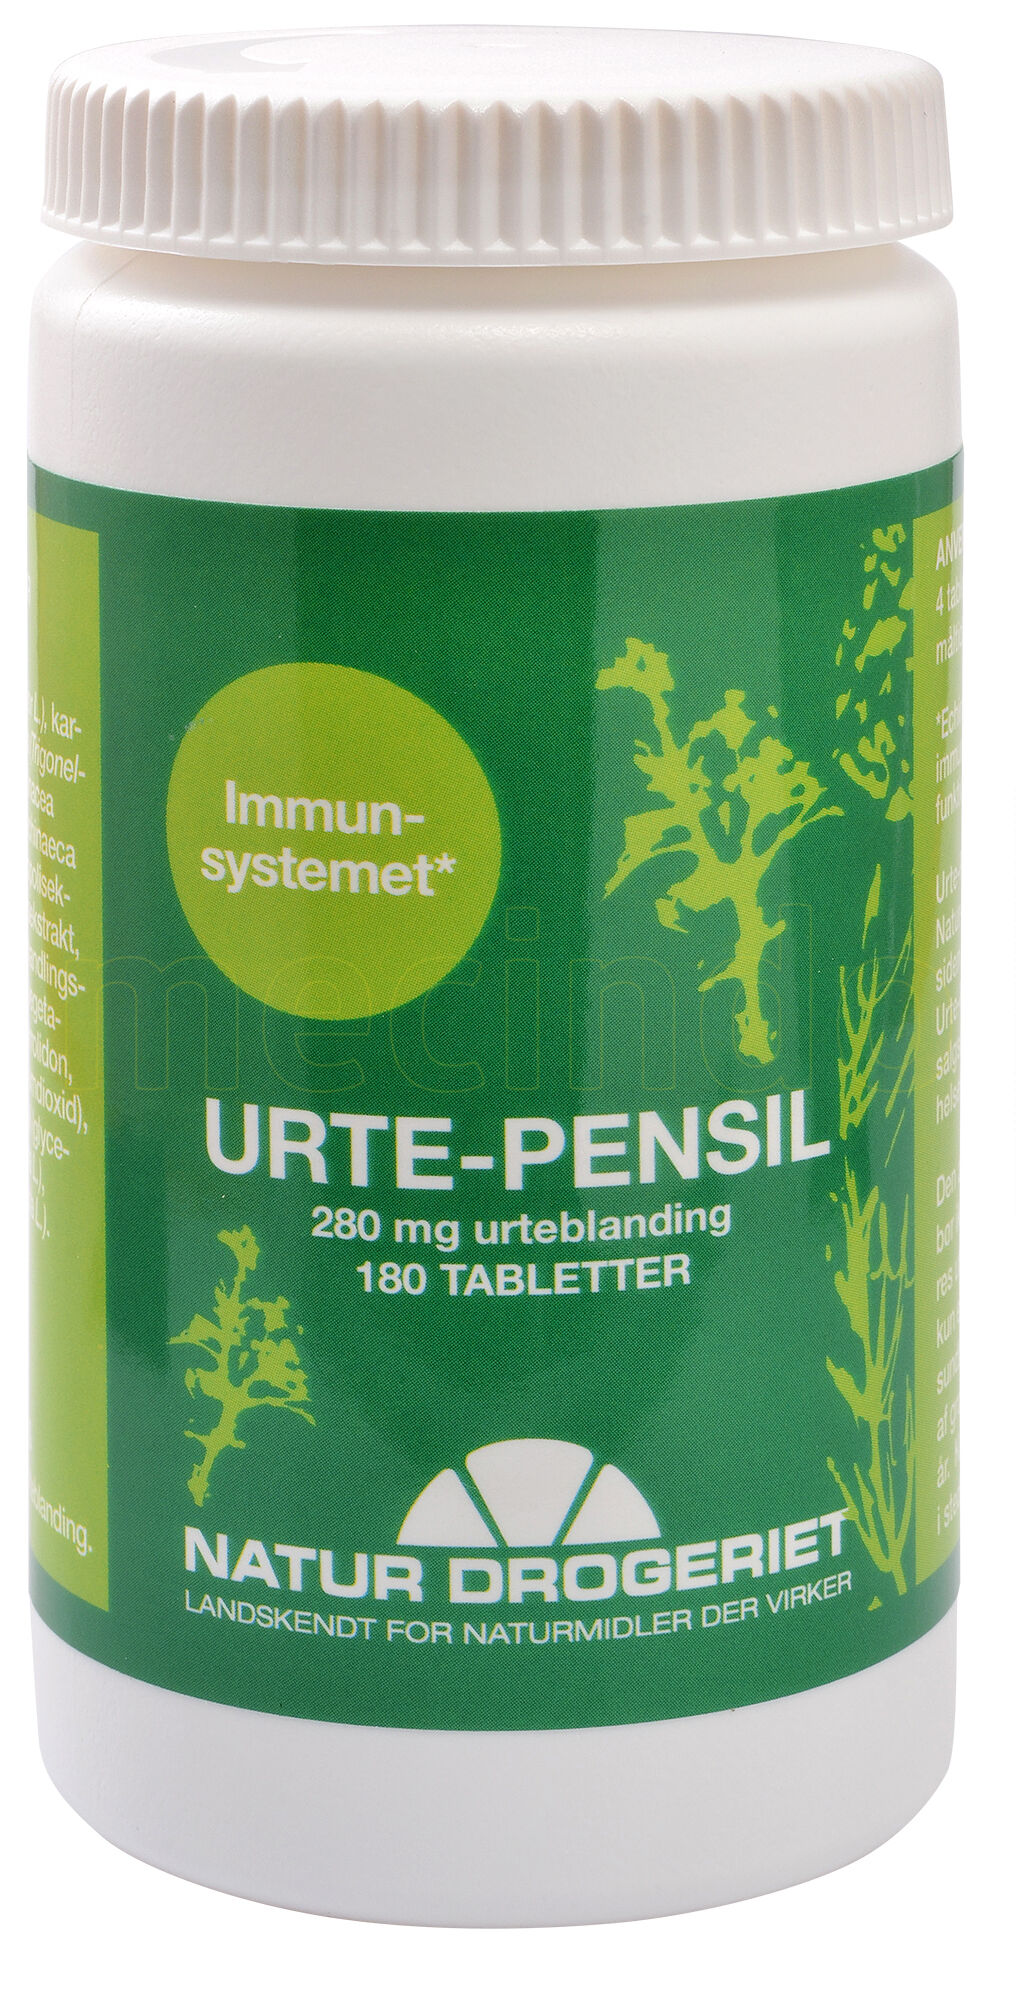 Natur Drogeriet Natur-Drogeriet Urte-pensil - 180 Tabletter